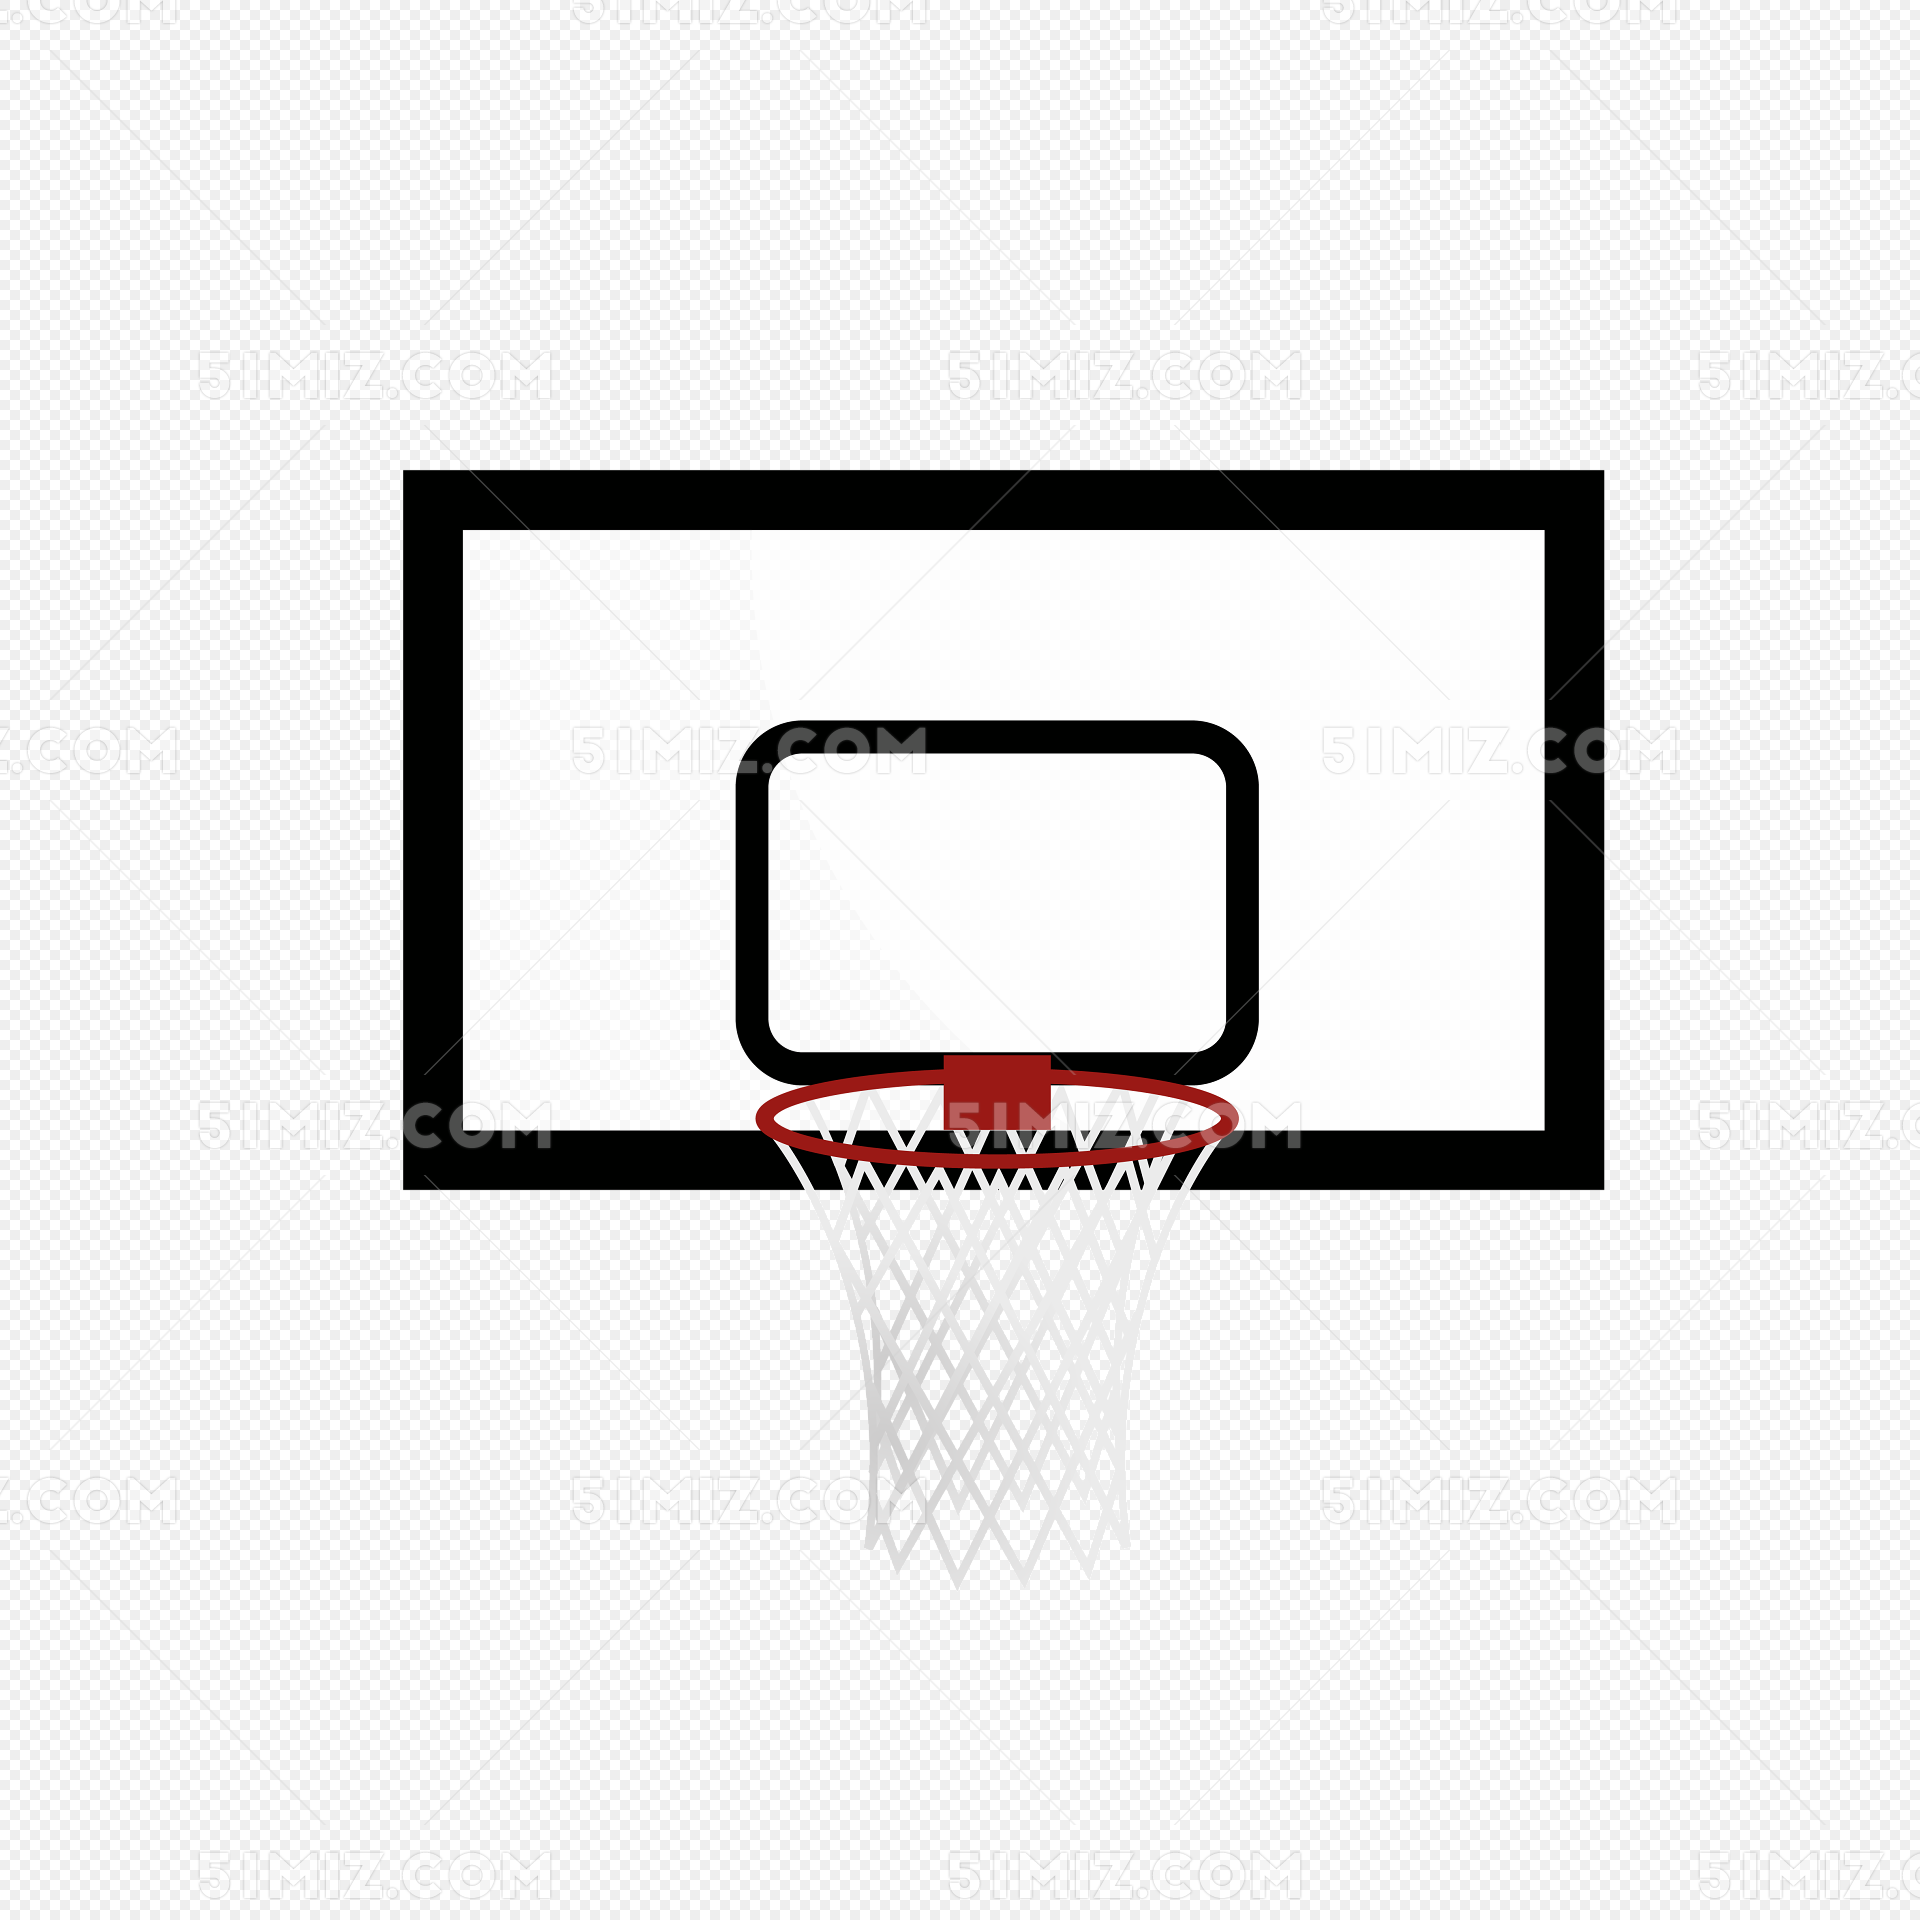 綠色的籃球框 卡通插畫 框子插畫 籃球框子, 籃球, 高高的籃球框, 籃球框子素材圖案，PSD和PNG圖片免費下載